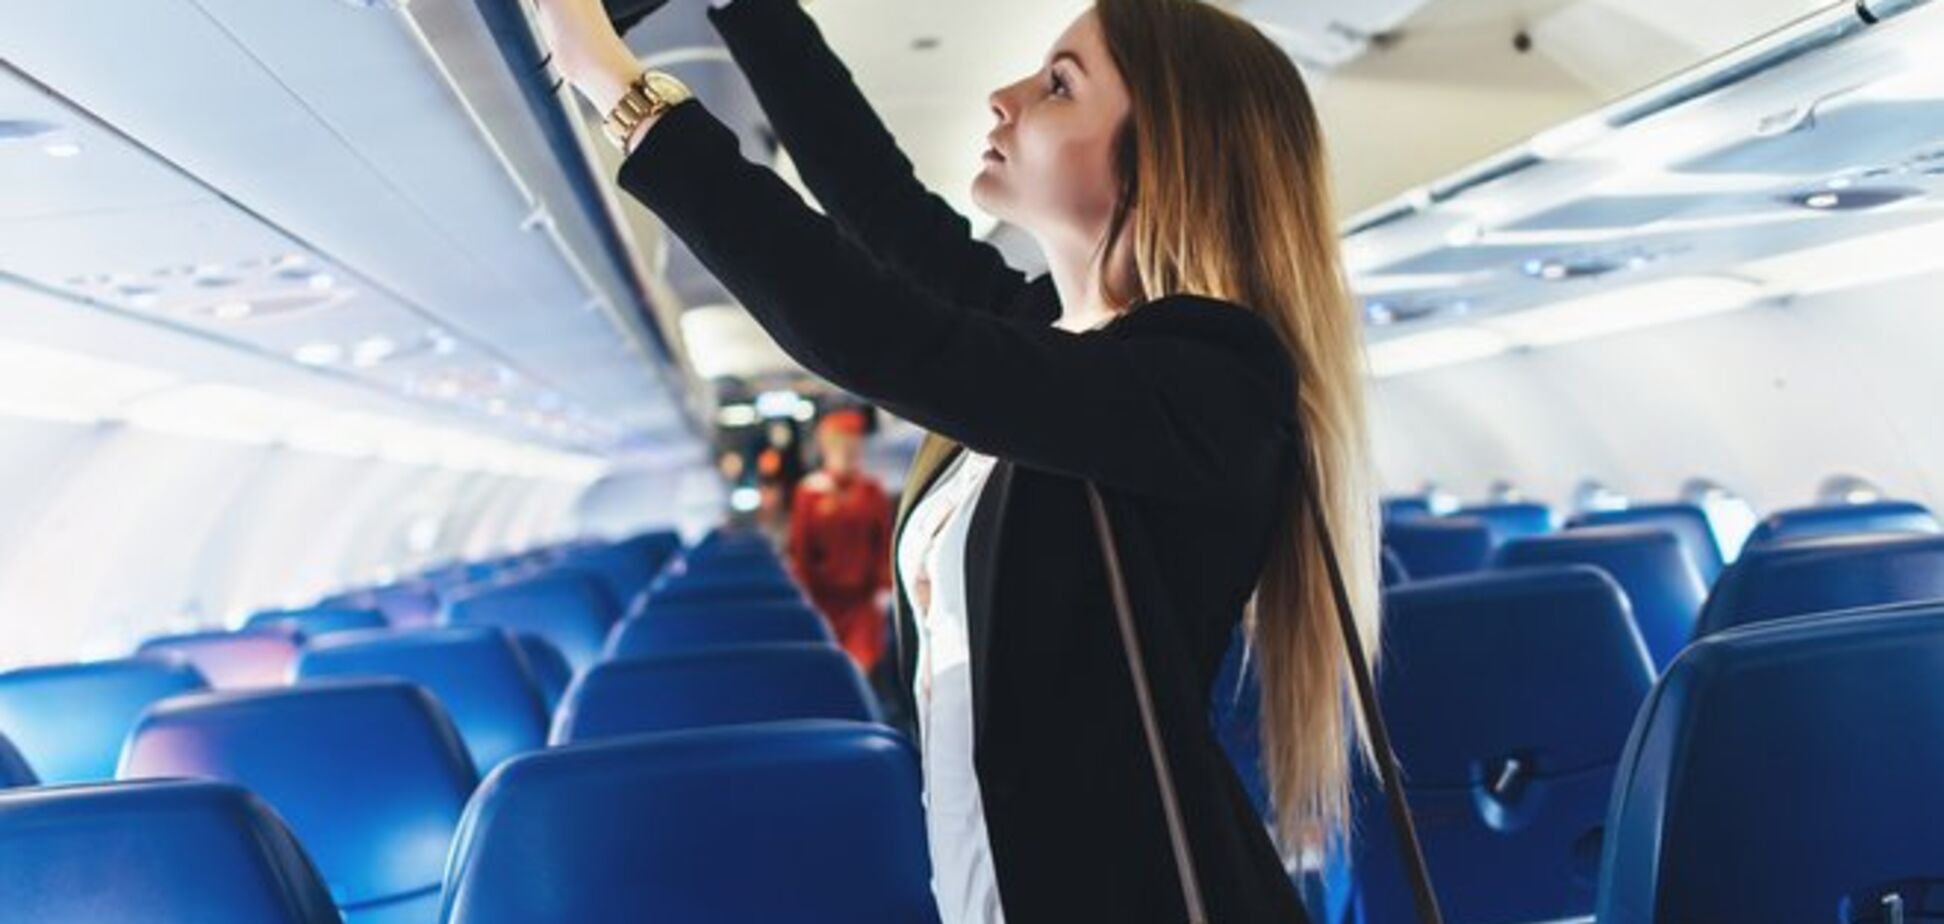 Популярные авиакомпании ввели новые правила для перевозки багажа: как сэкономить 